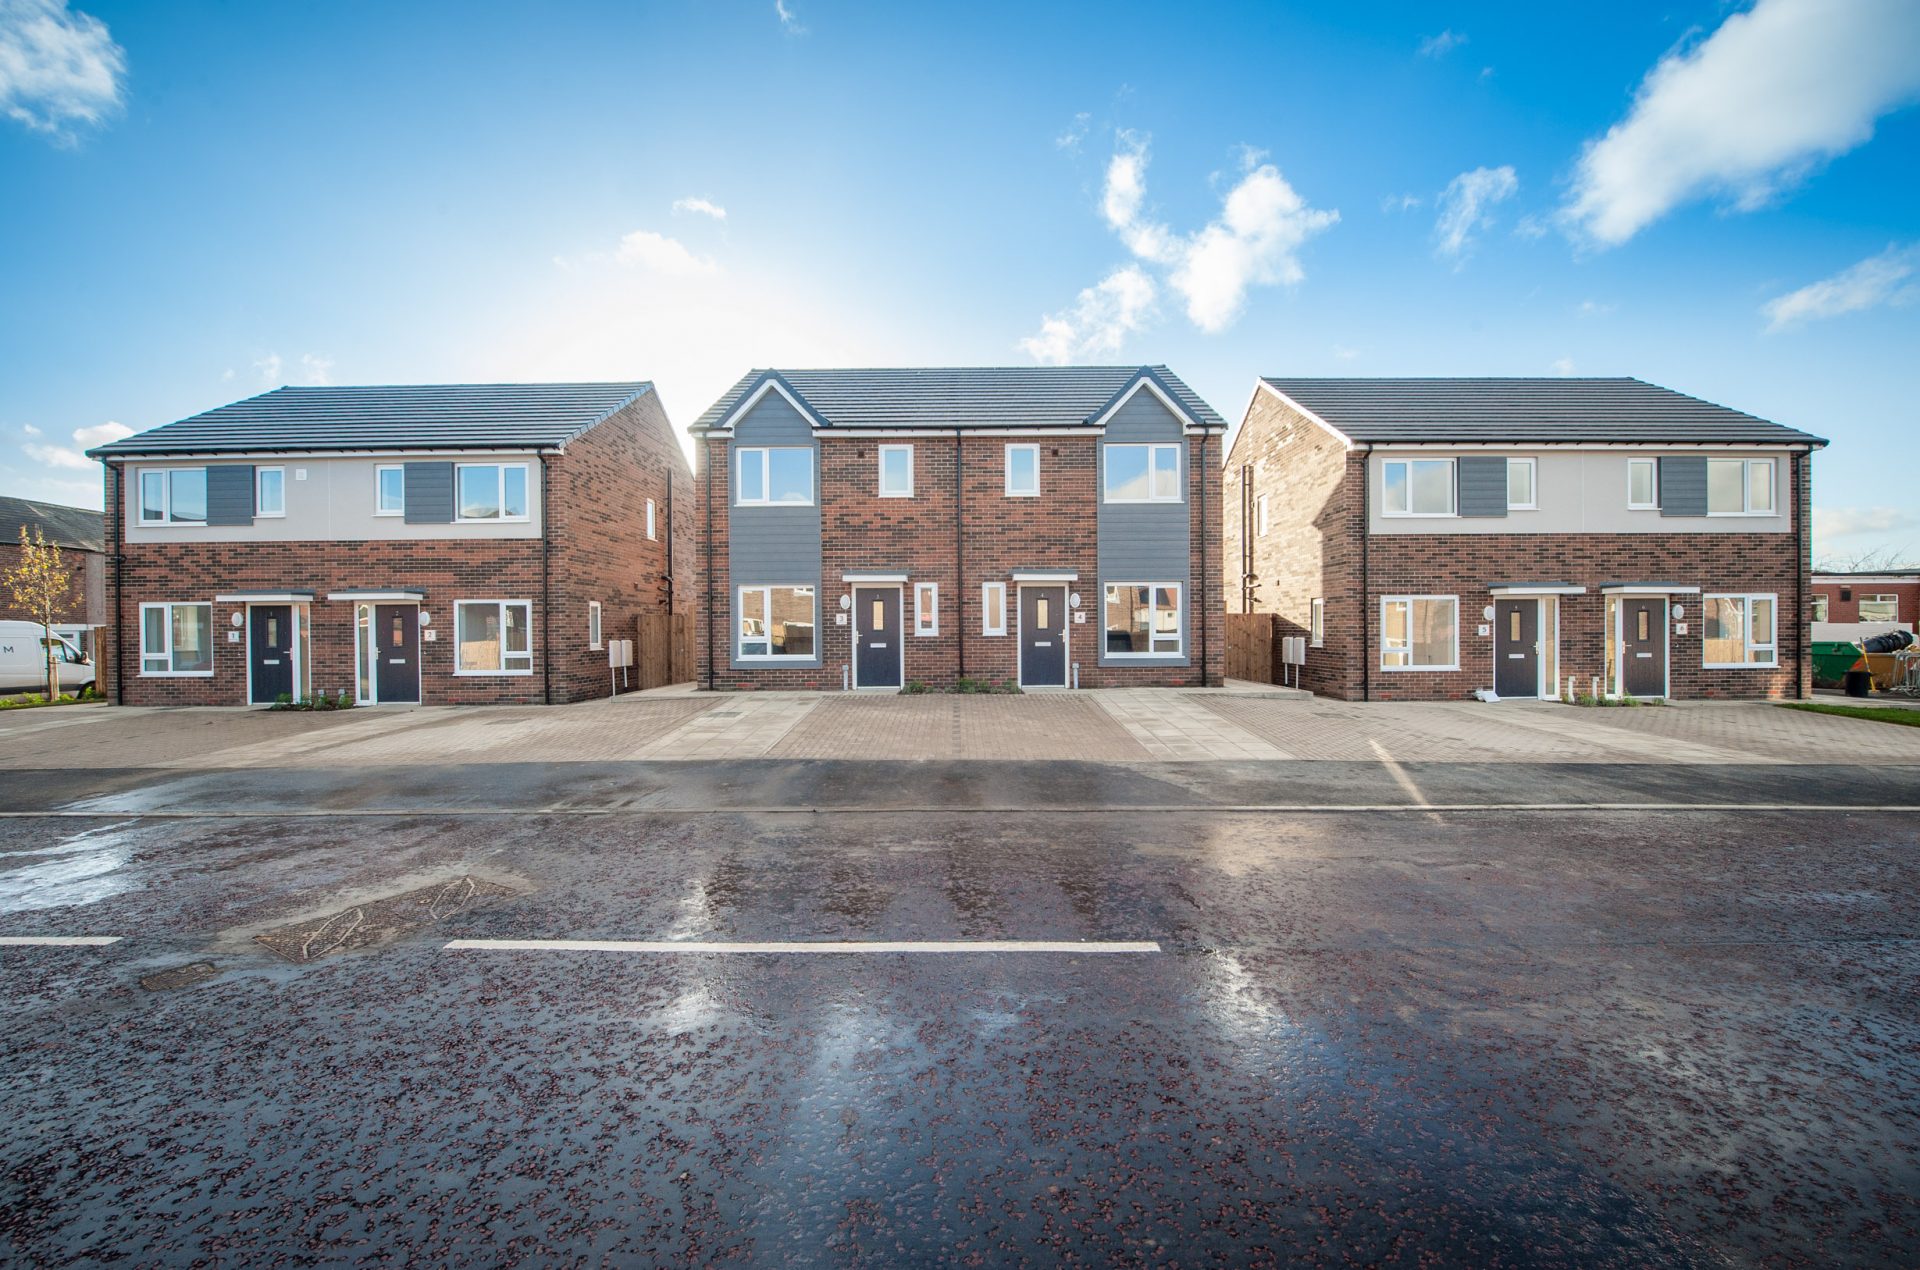 Adderstone Living deliver Sunderland social housing scheme